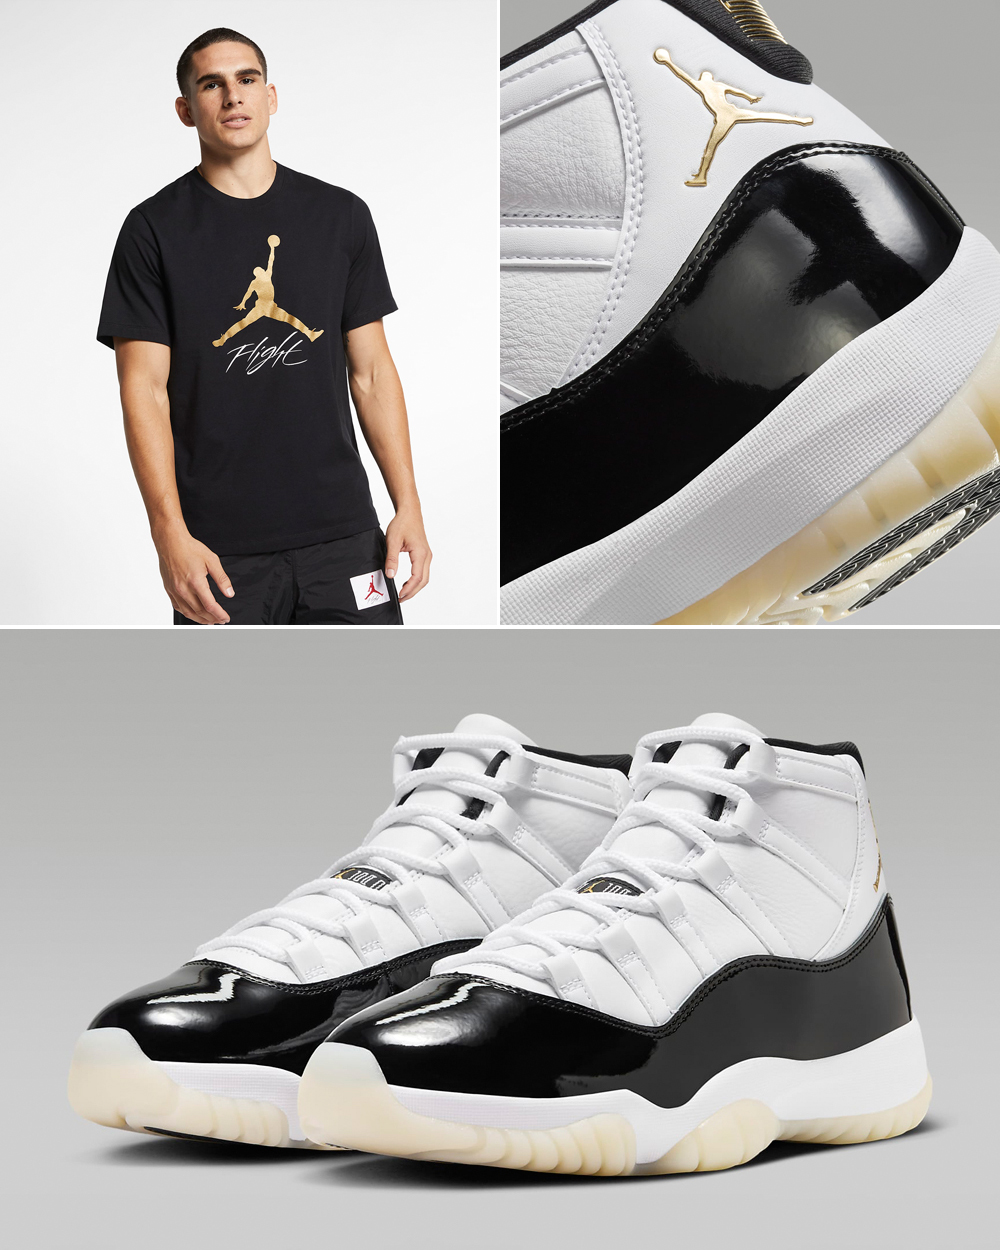 Air-Jordan-11-Gratitude-Matching-Shirt-Outfit